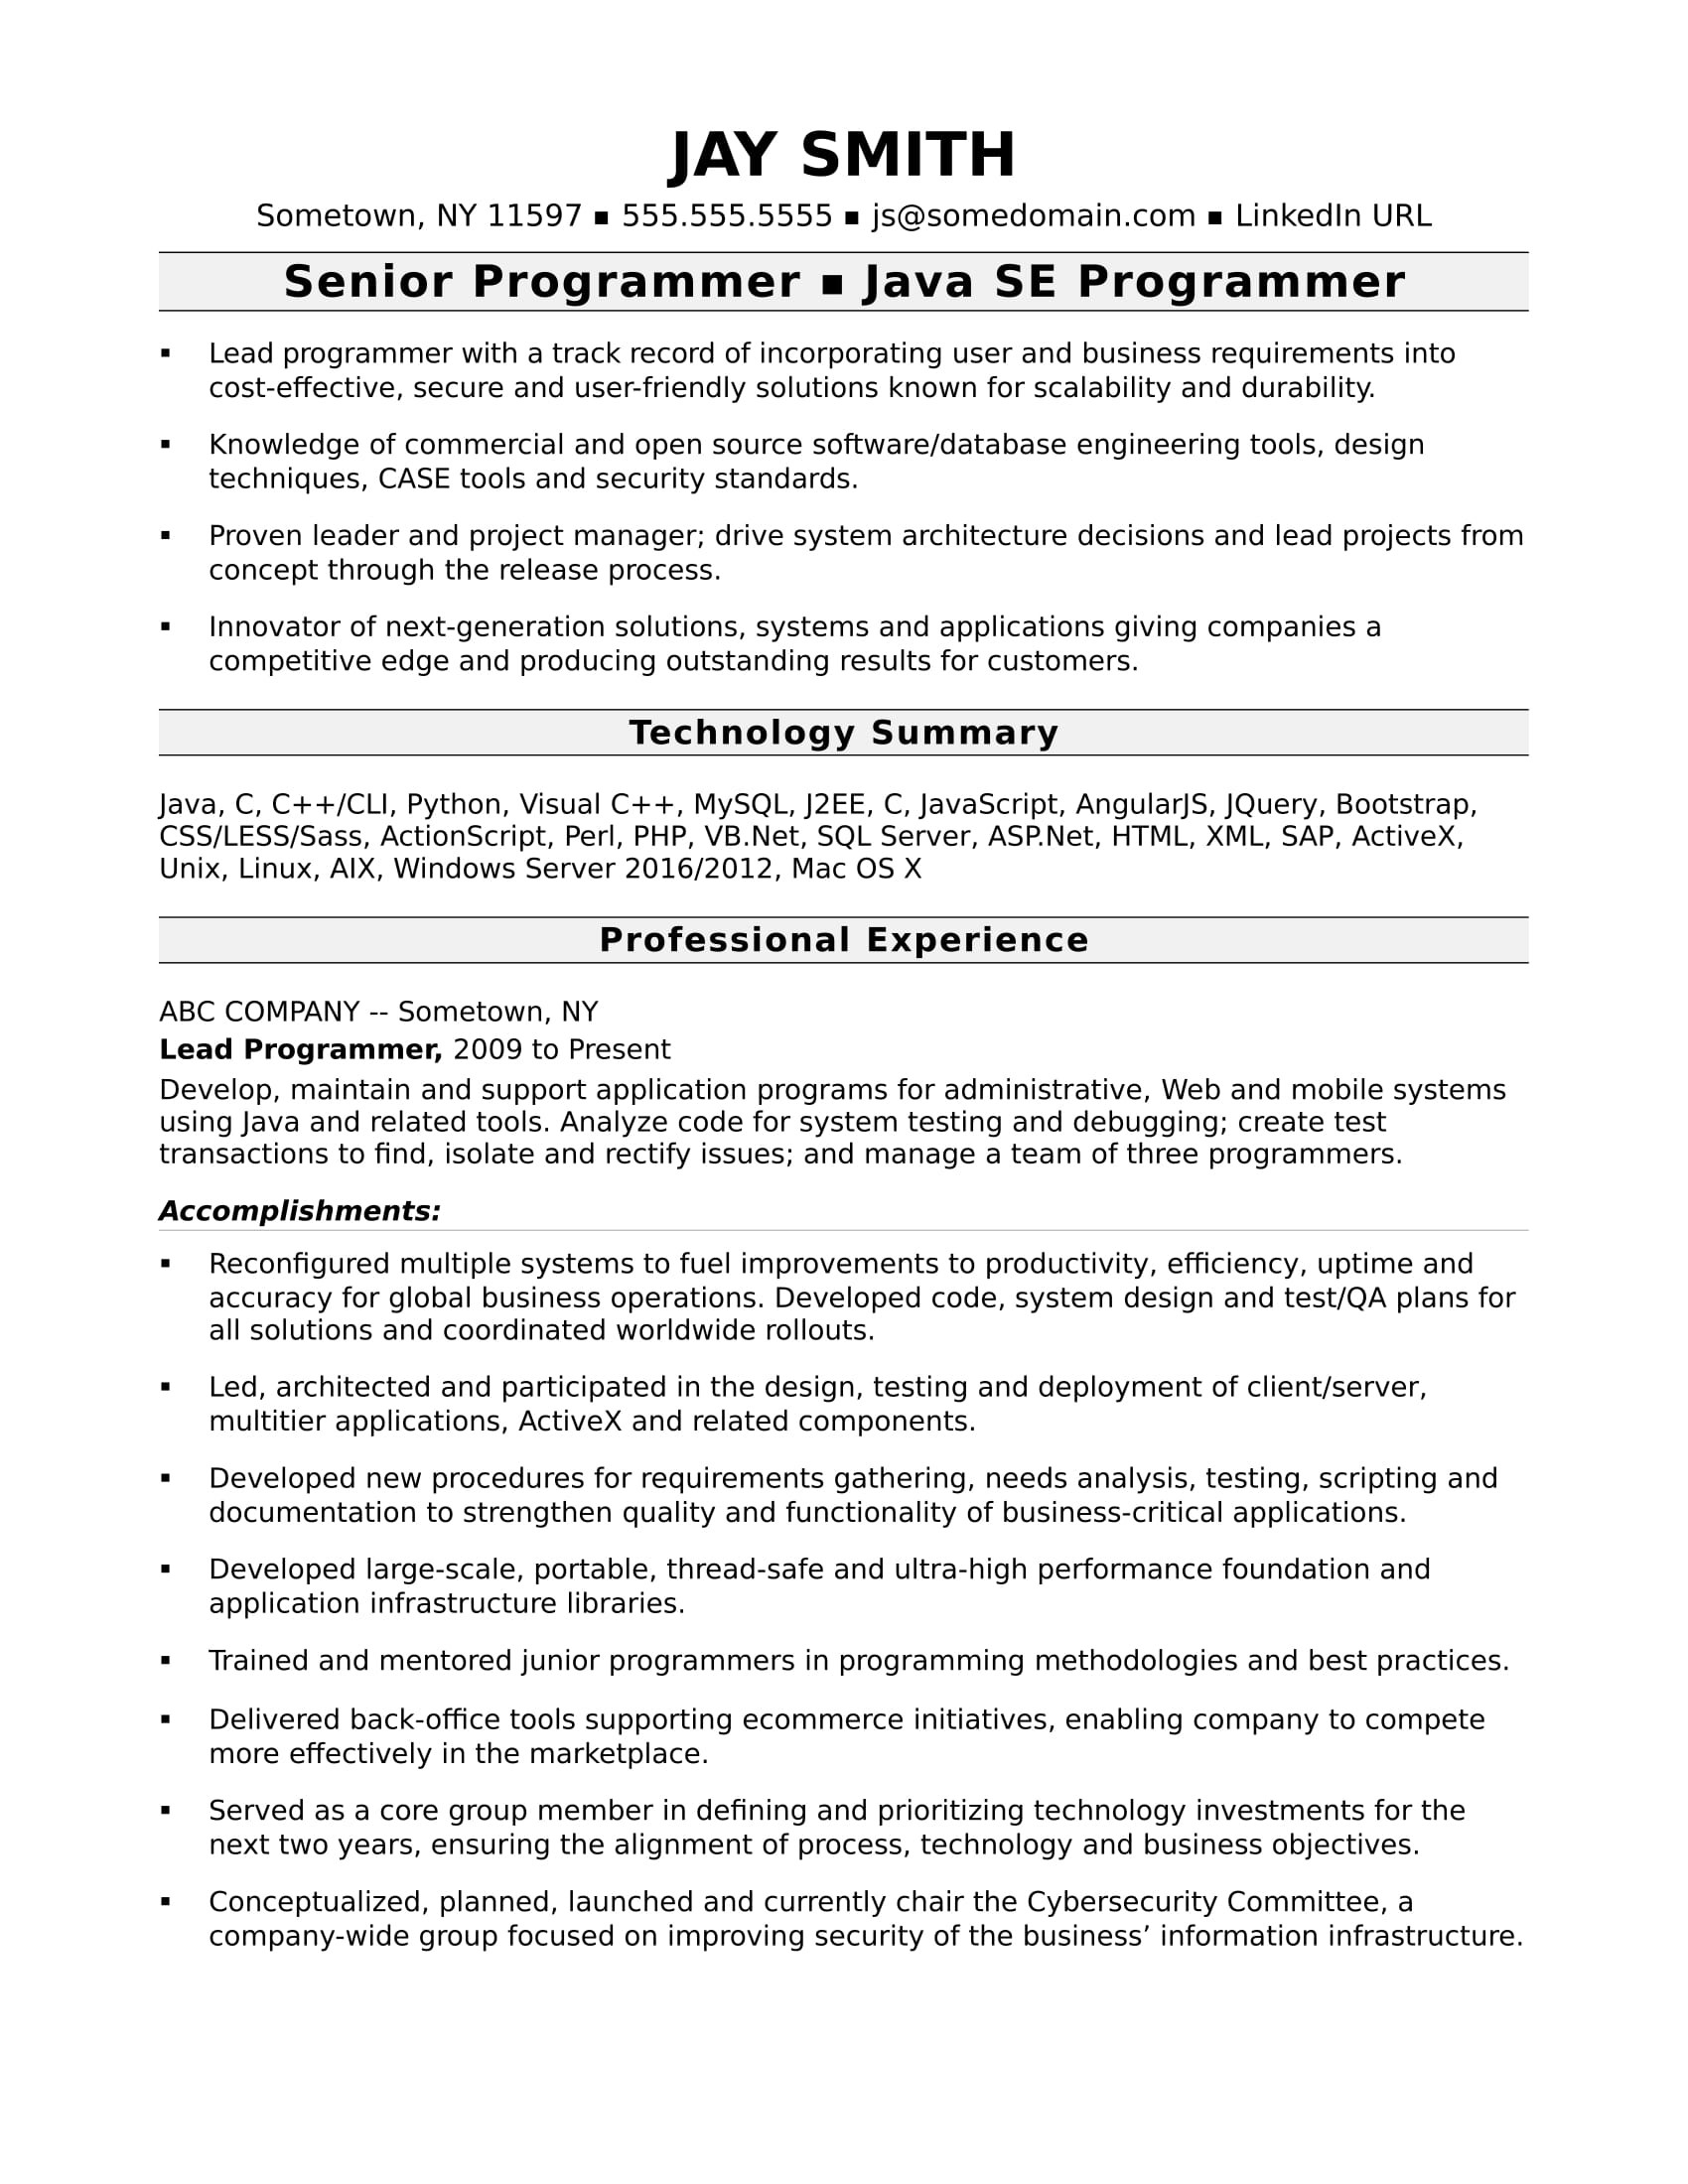 Resume Sample for Uptime Monitoring System Programmer Resume Template Monster.com